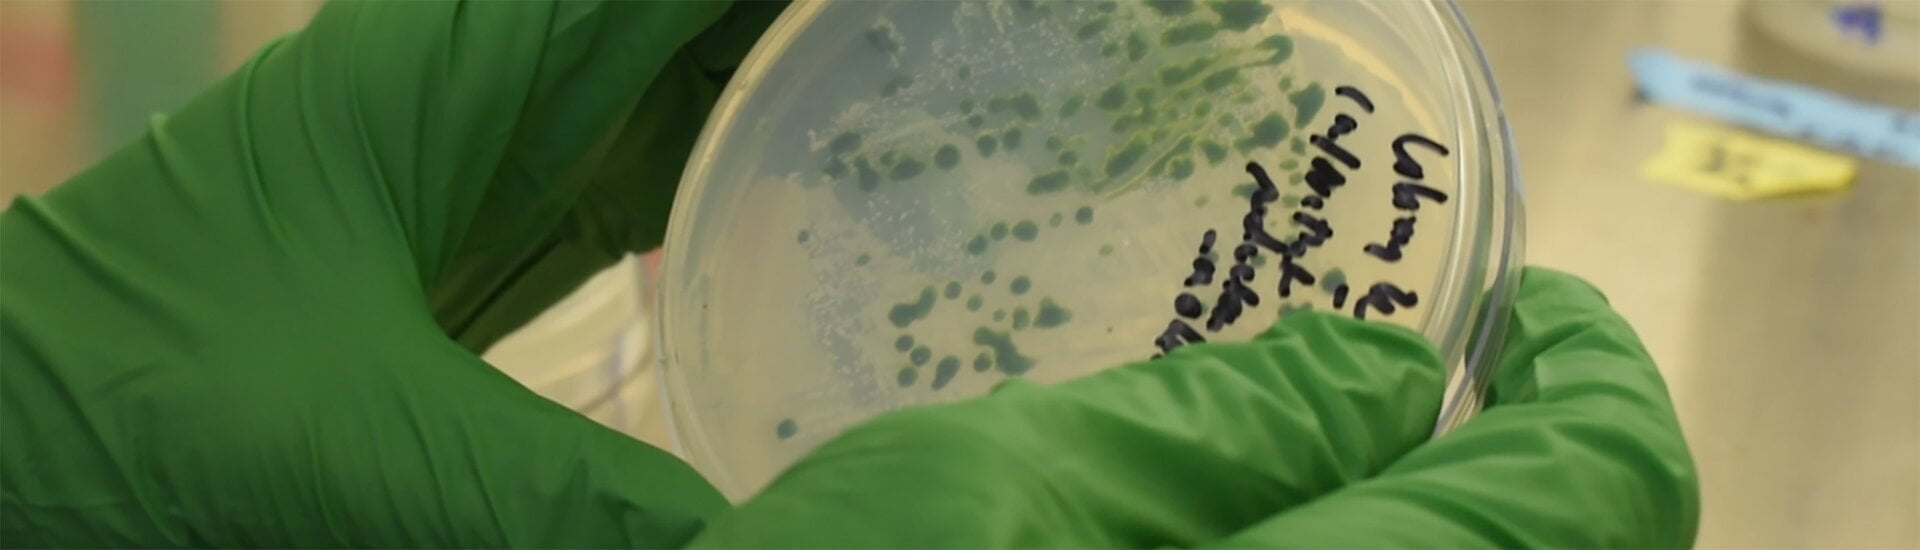 recent algae discovery كيف يمكن للطحالب أن تعزز إنتاج الوقود الحيوي؟ مجلة نقطة العلمية